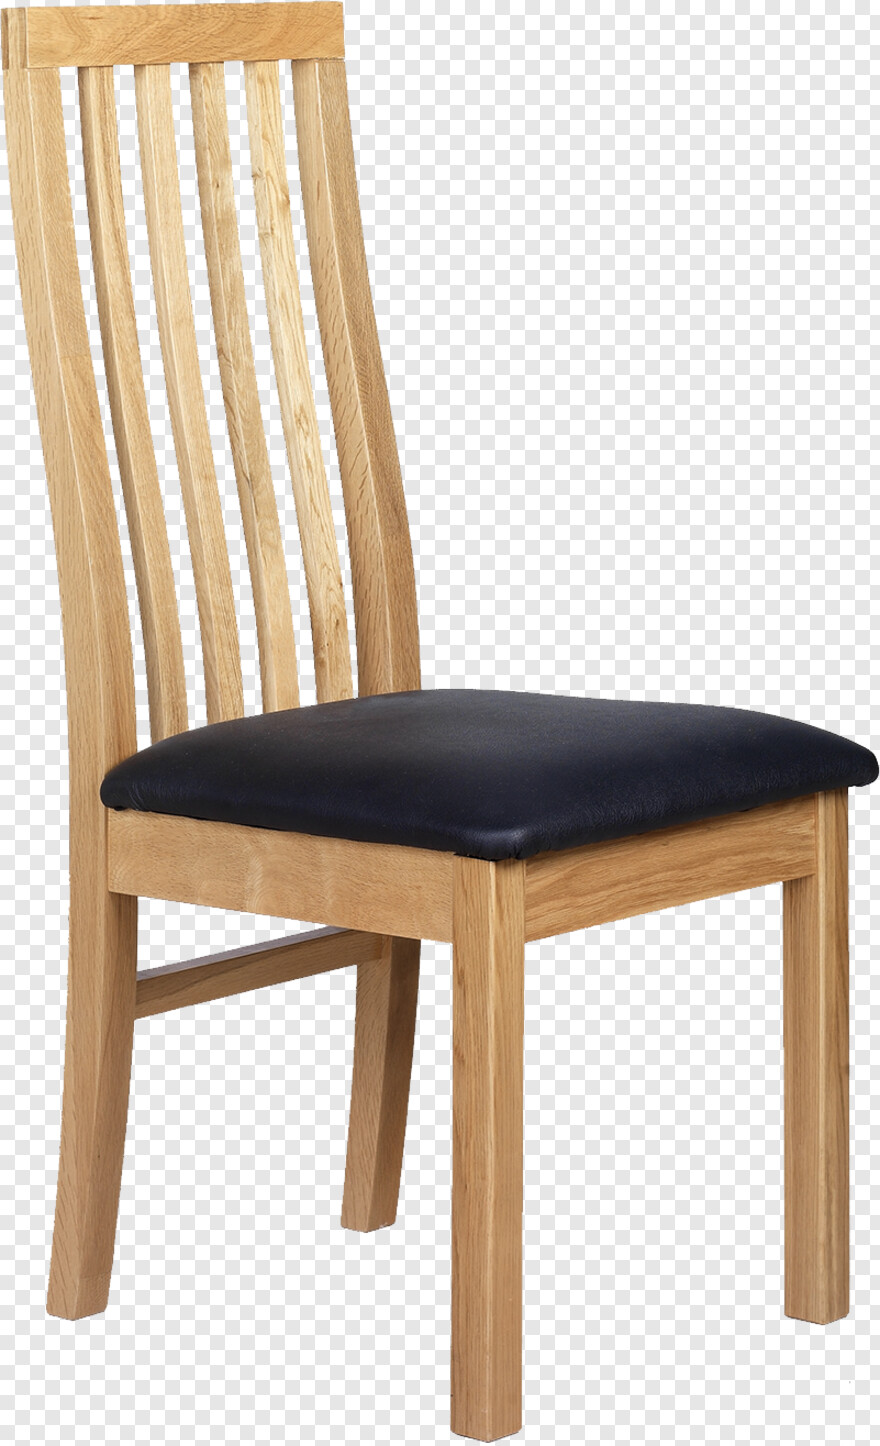 chair # 470494